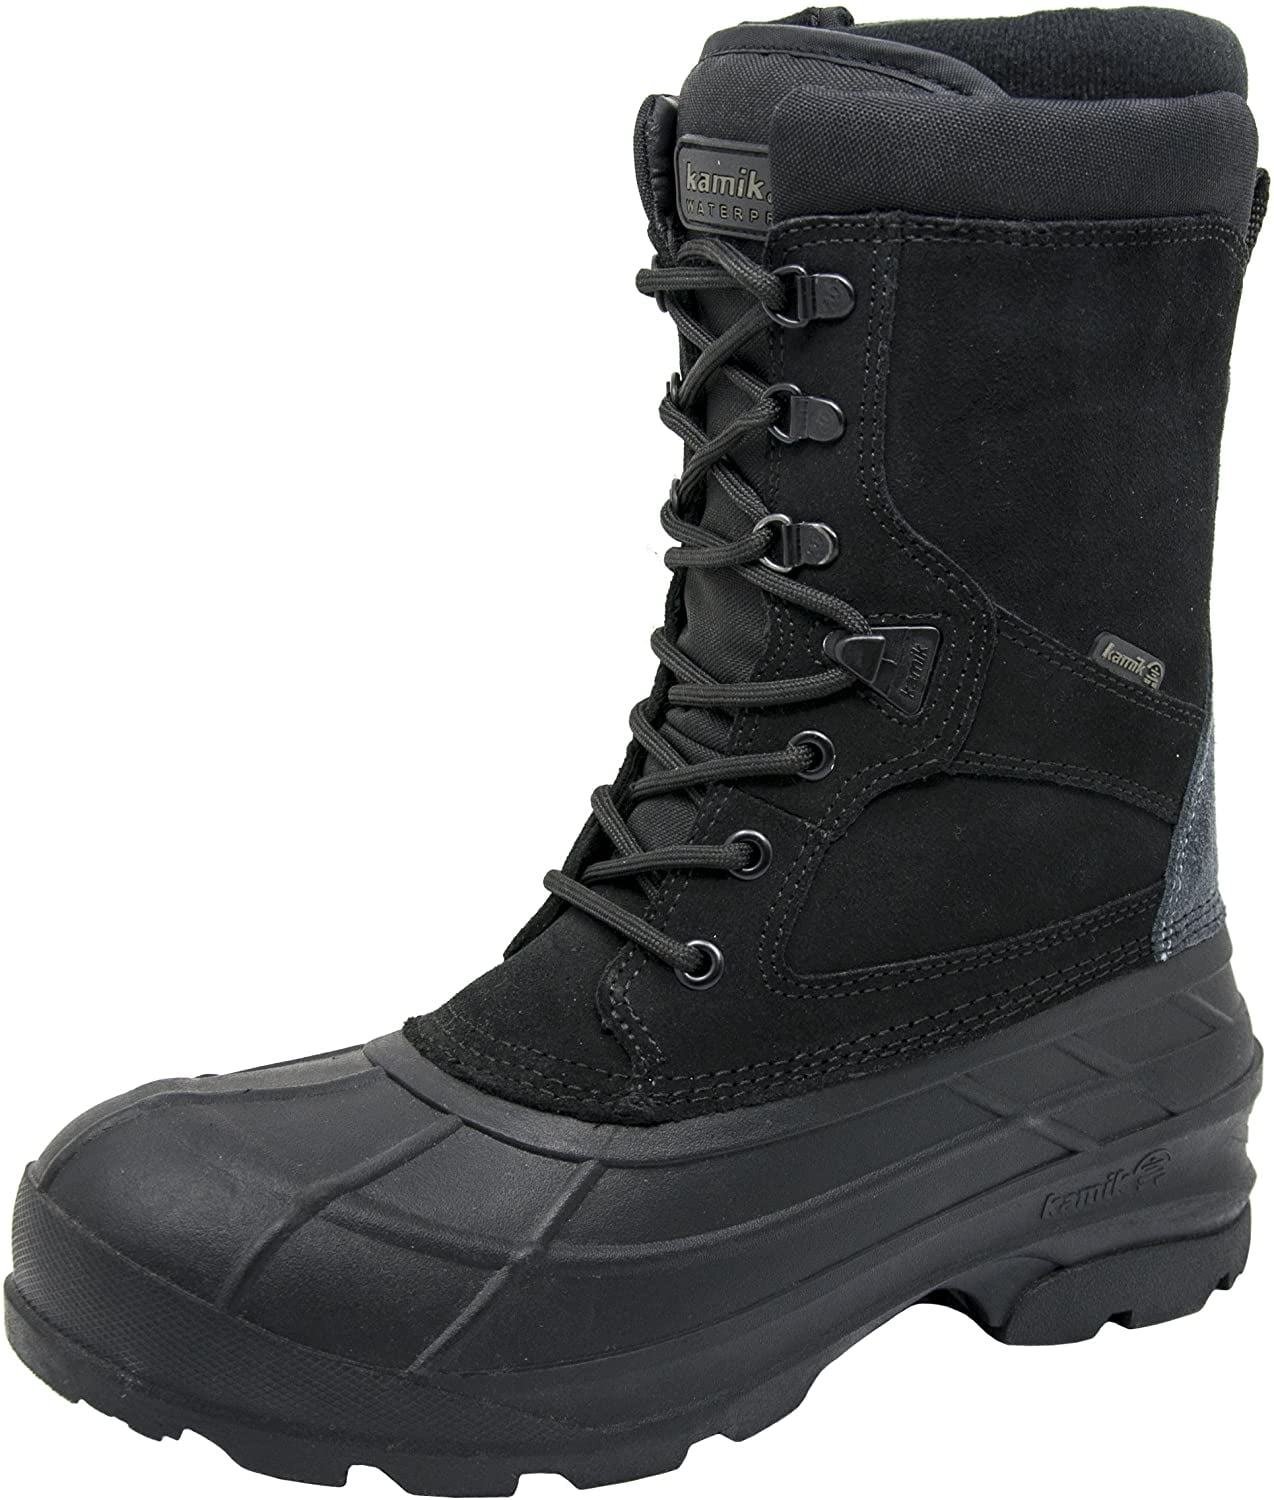 Kamik Men's Nationplus Boot (11 D(M) US, Black/Charcoal)